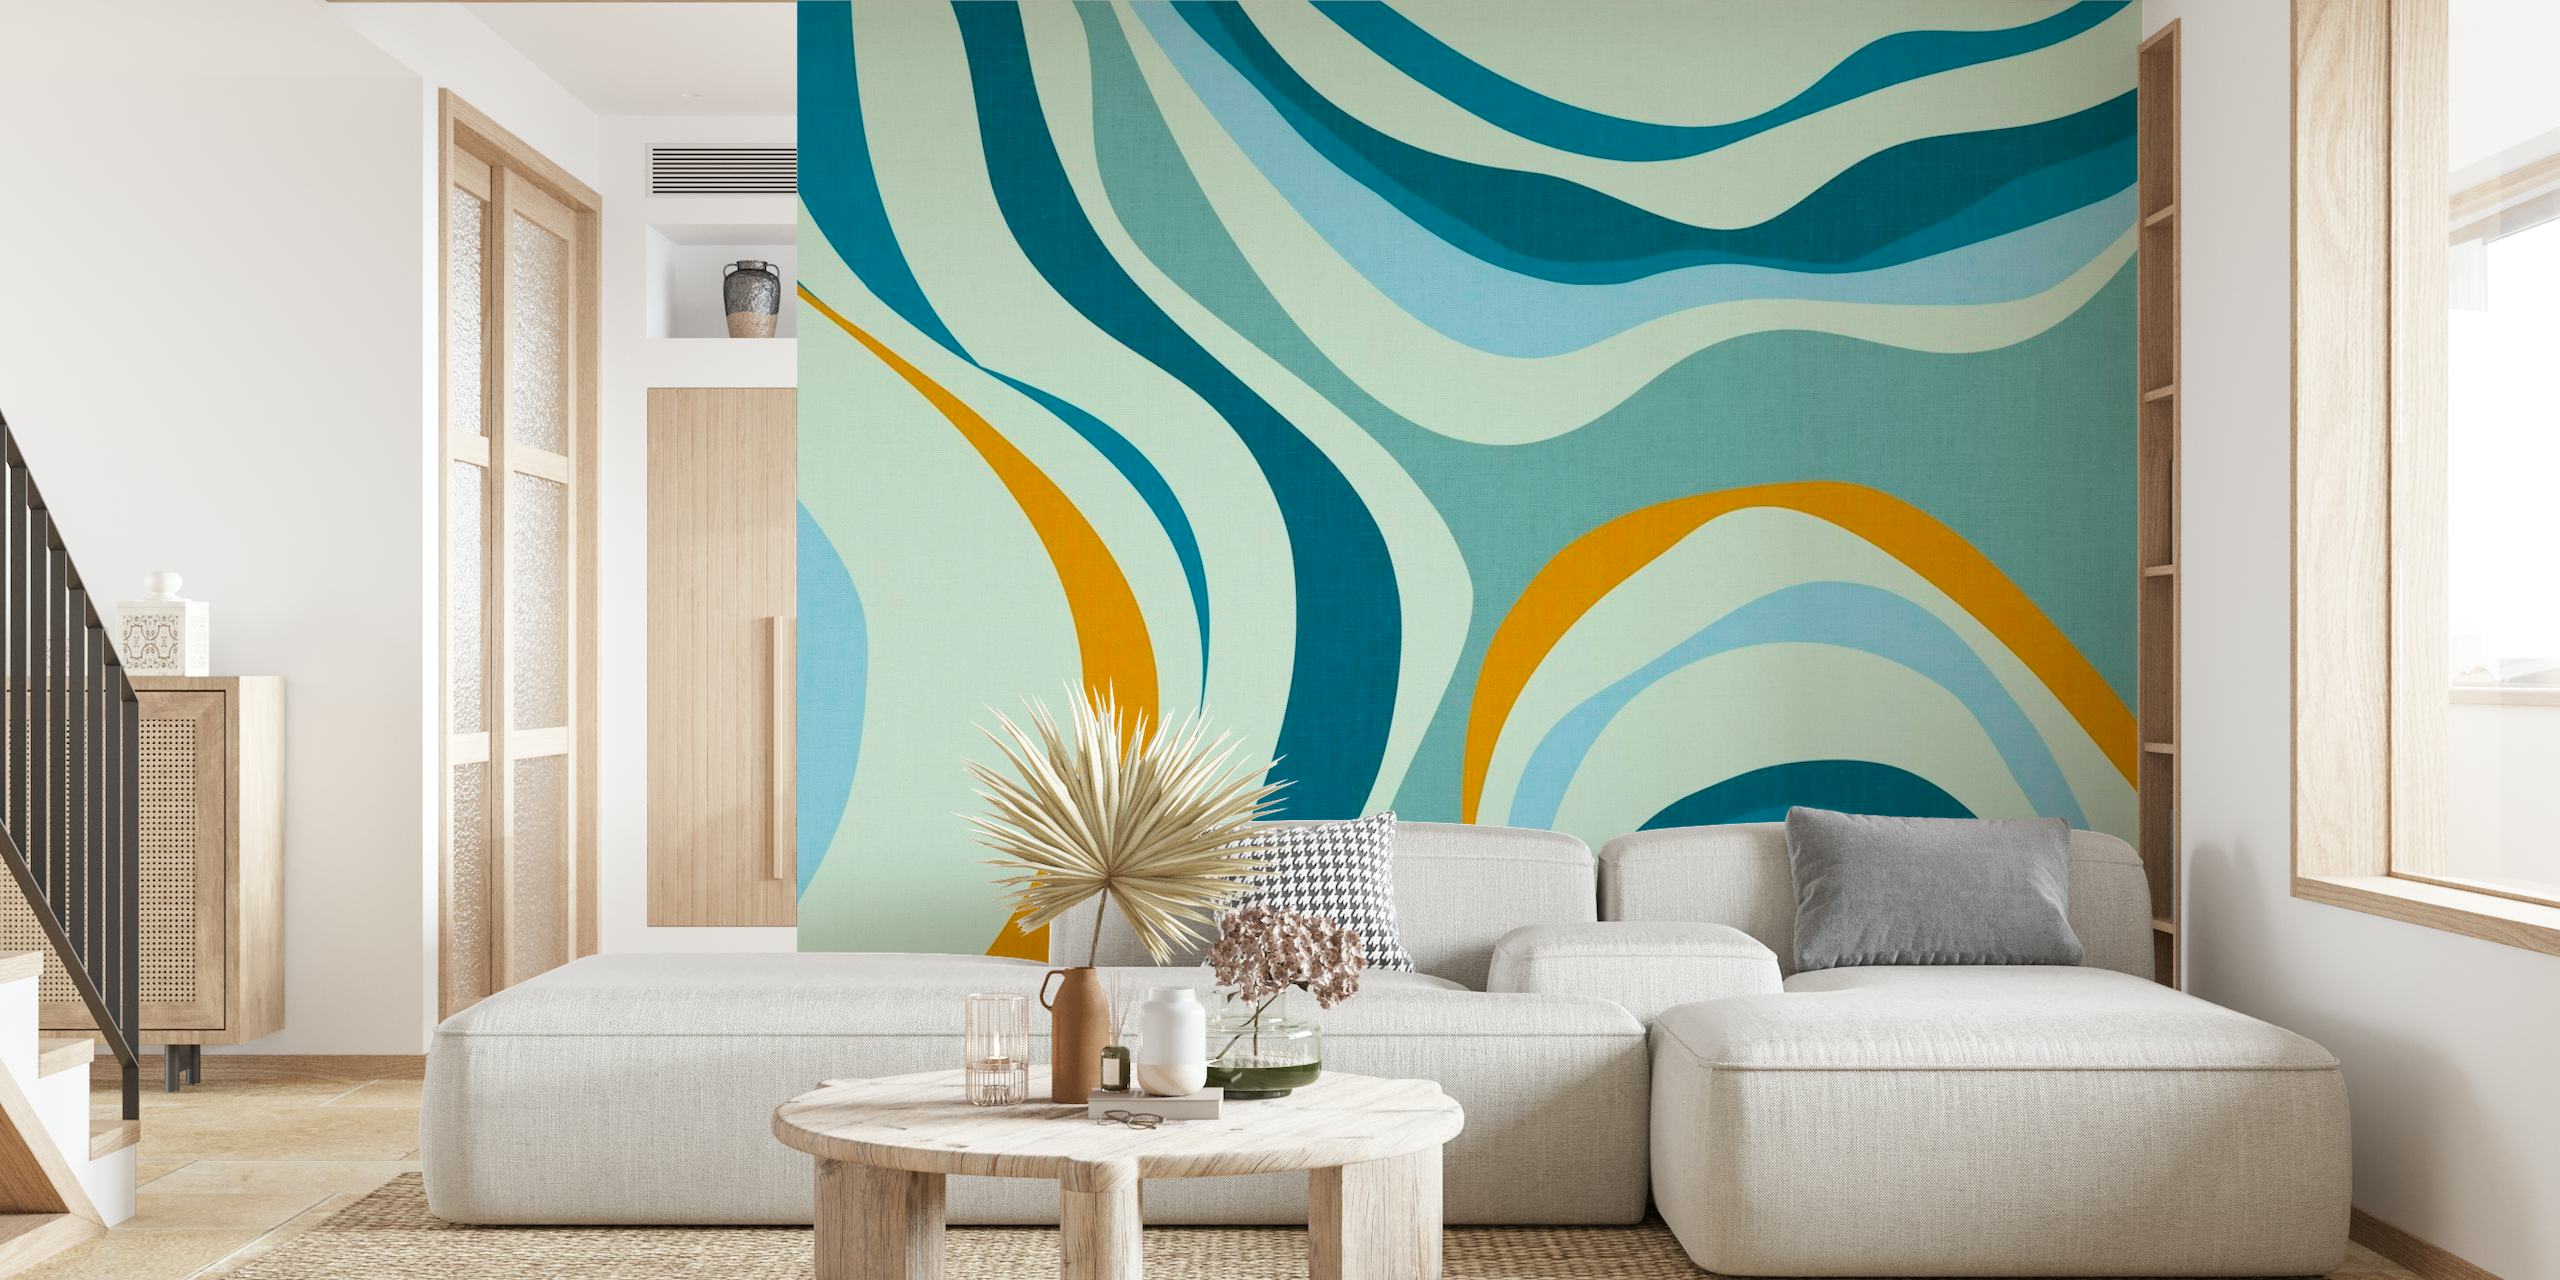 Retro-stijl blauwe golven muurschildering met serene blauwe en zandige kleurpatronen